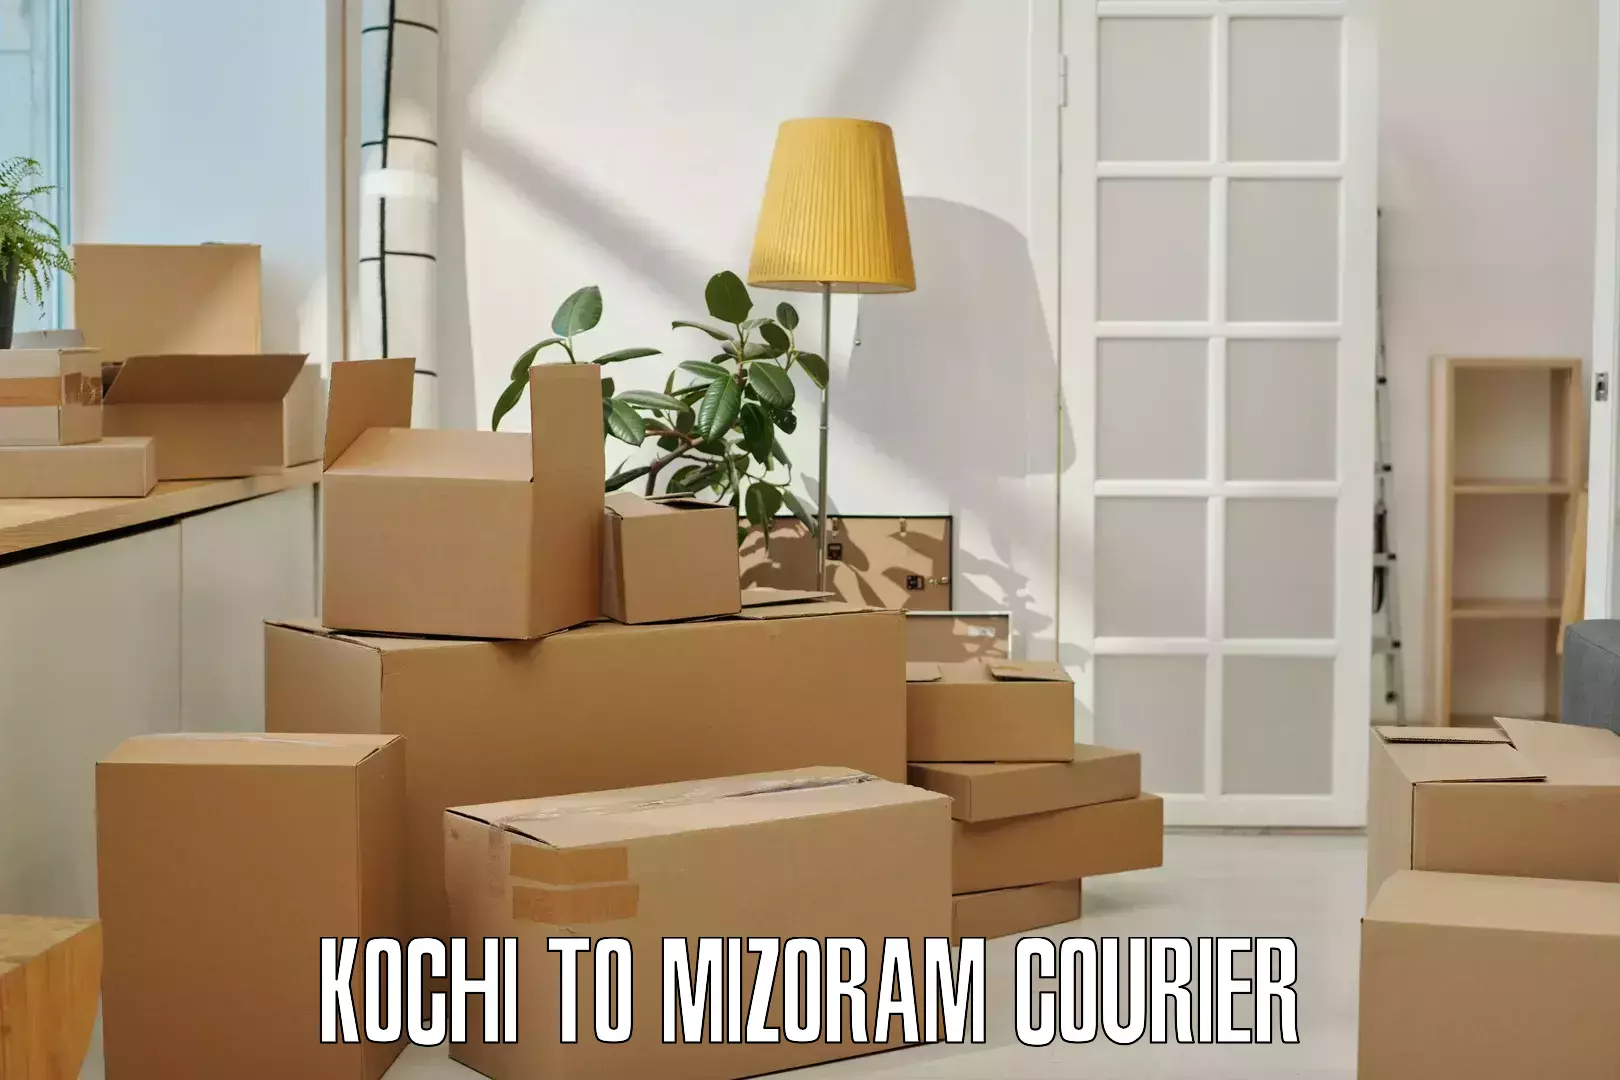 Efficient parcel service Kochi to Saitual